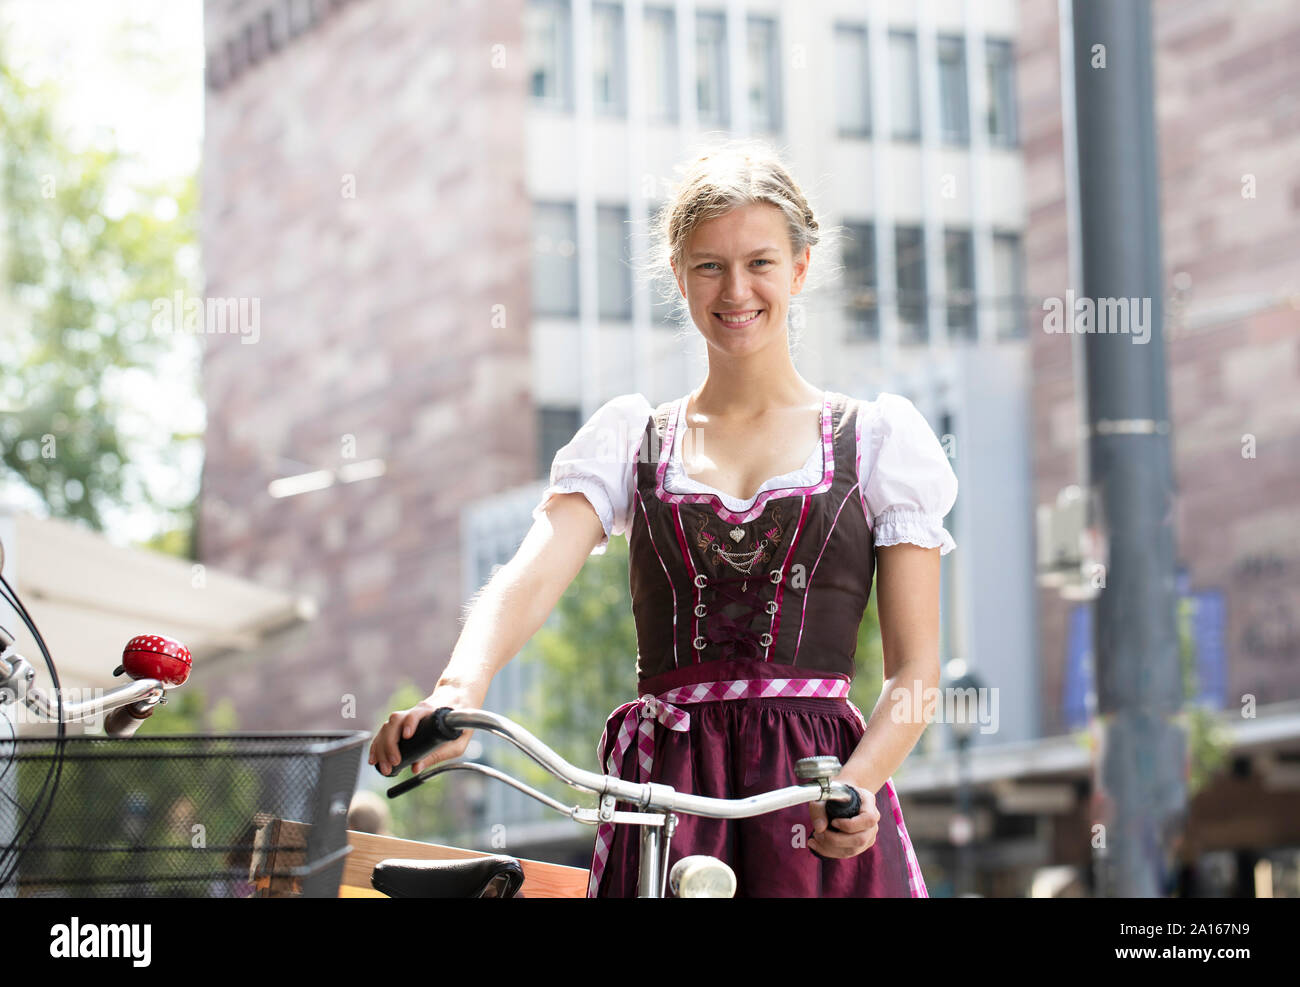 Portrait von lächelnden blonde Frau mit Fahrrad tragen Dirndl in der Stadt, Freiburg, Deutschland Stockfoto